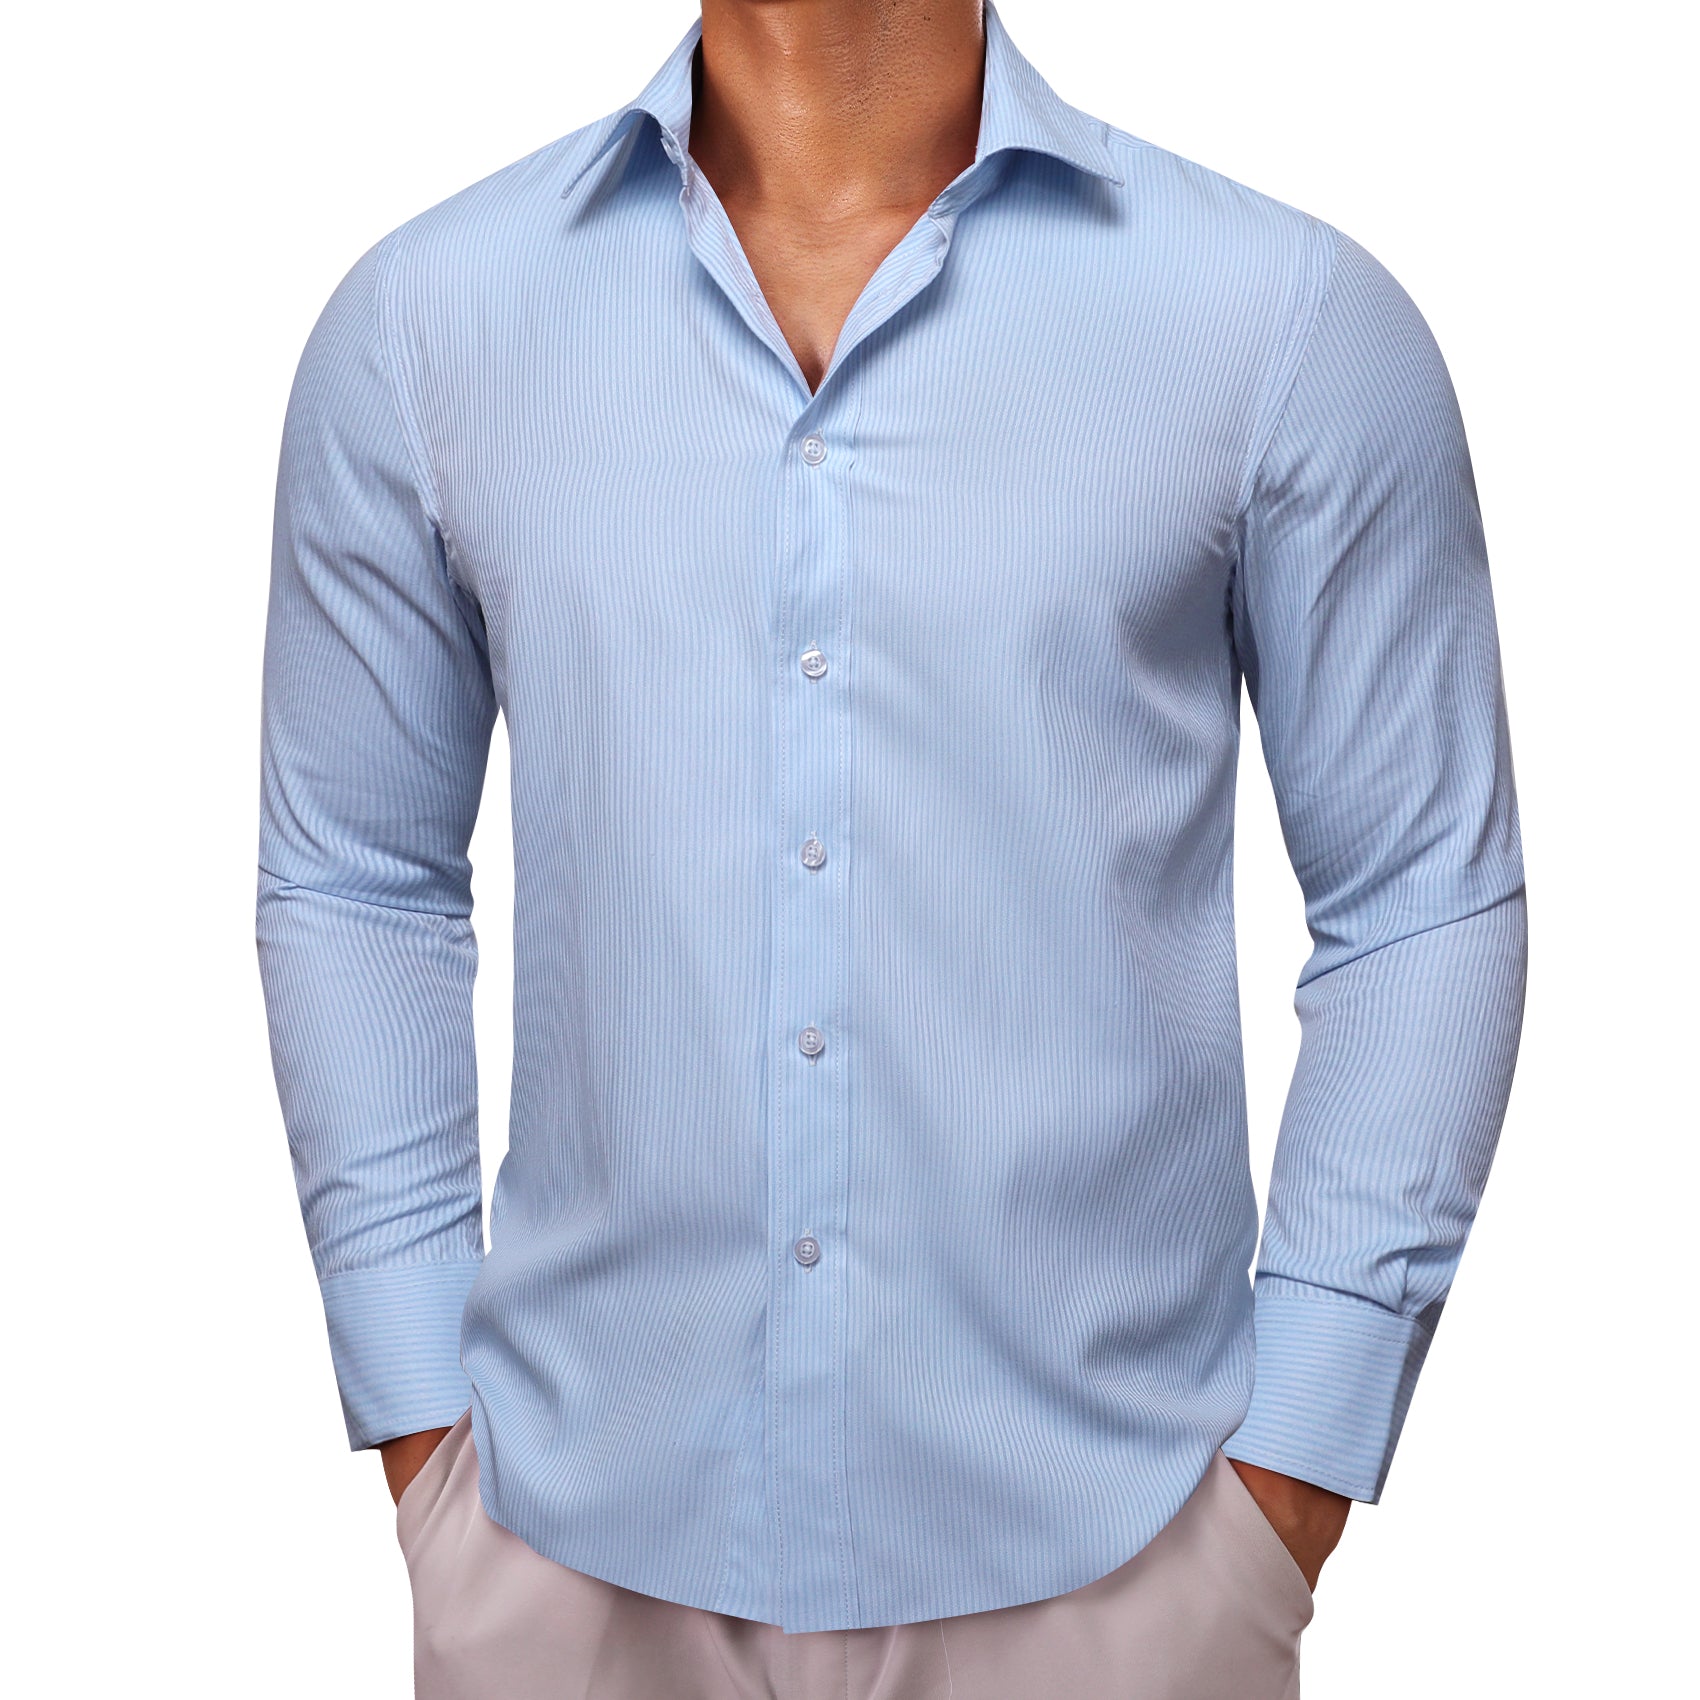 Barry.wang Light Blue Solid Men's Shirt